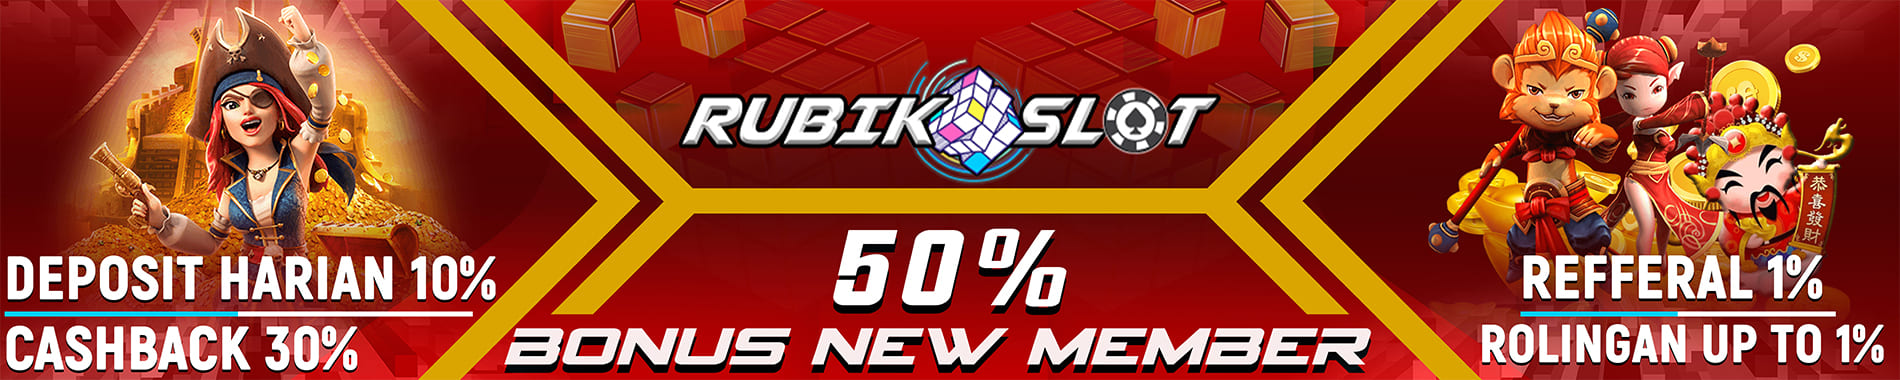 Bonus New Member Rubikslot